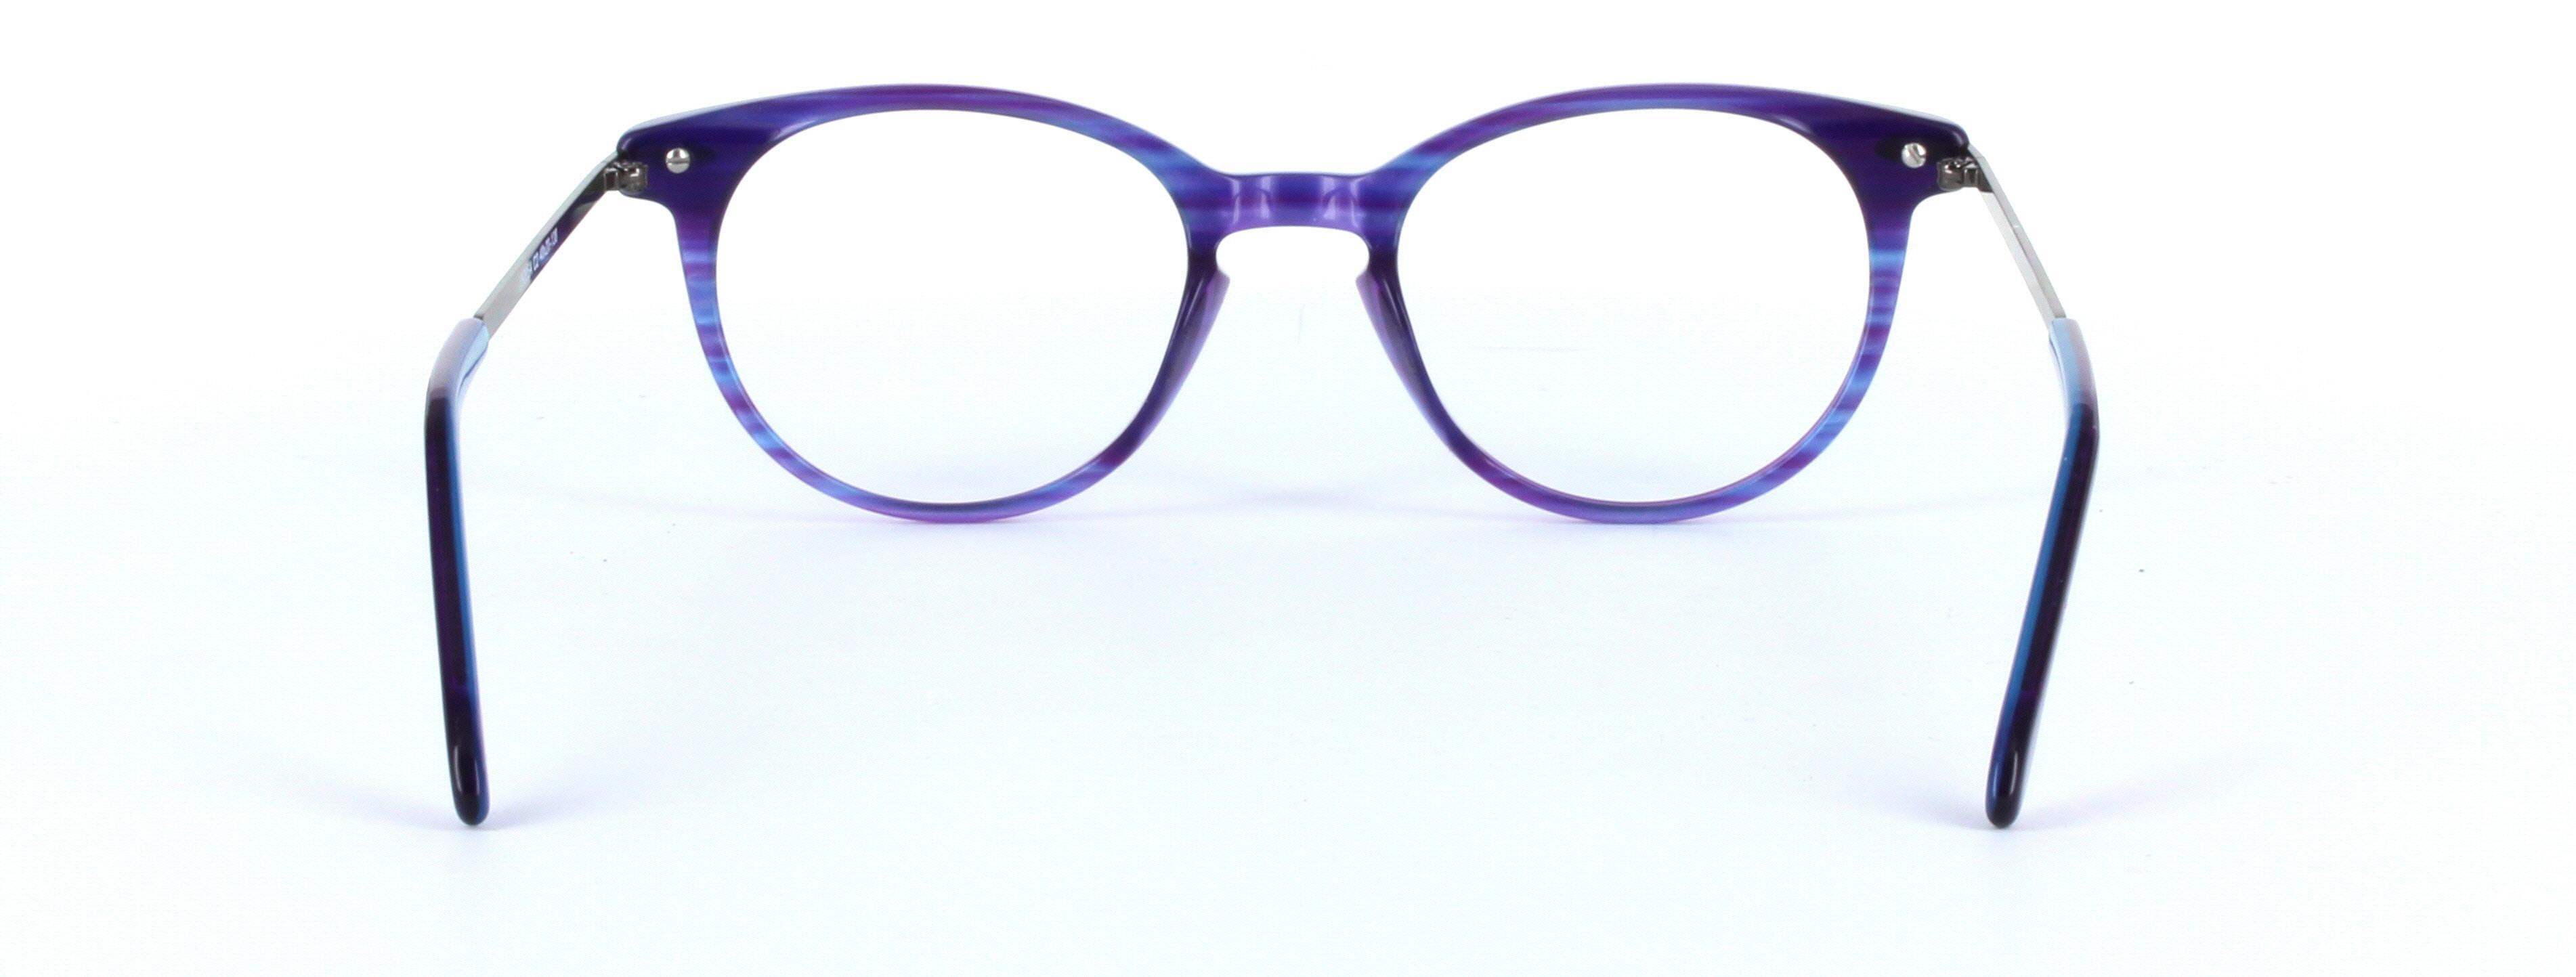 Amanda Purple Full Rim Round Acetate Glasses - Image View 4